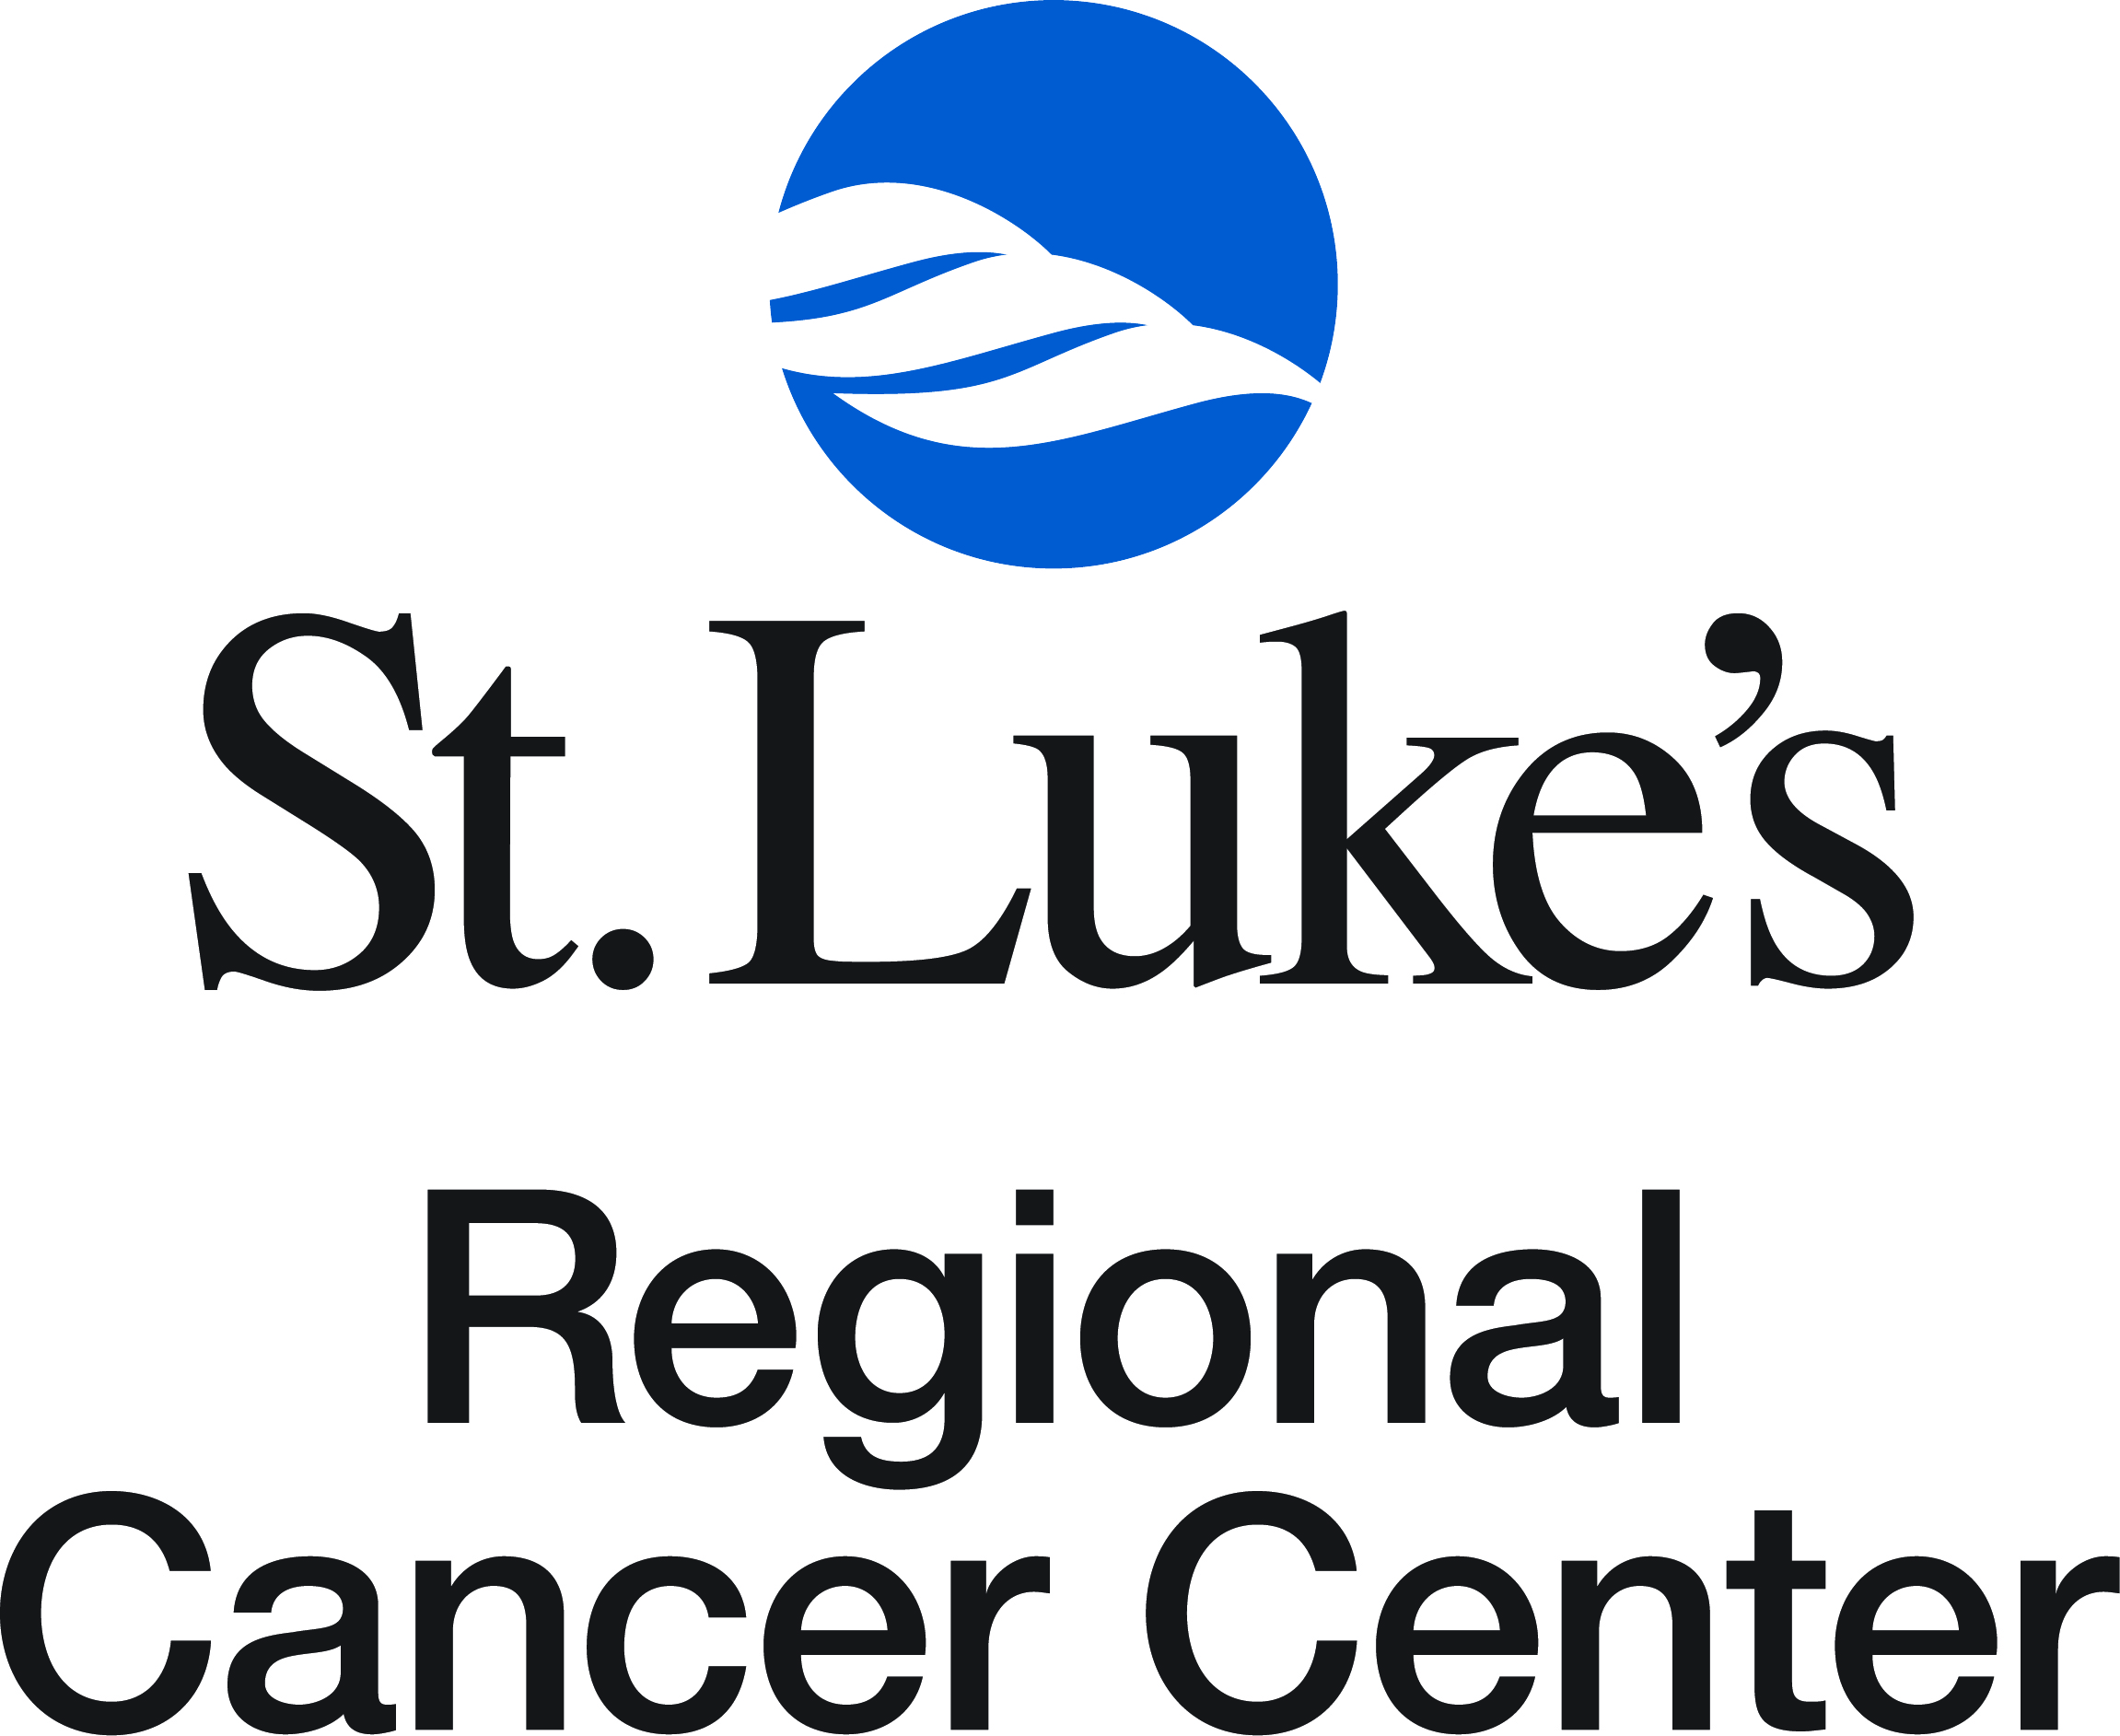 St. Luke's Regional Cancer Center